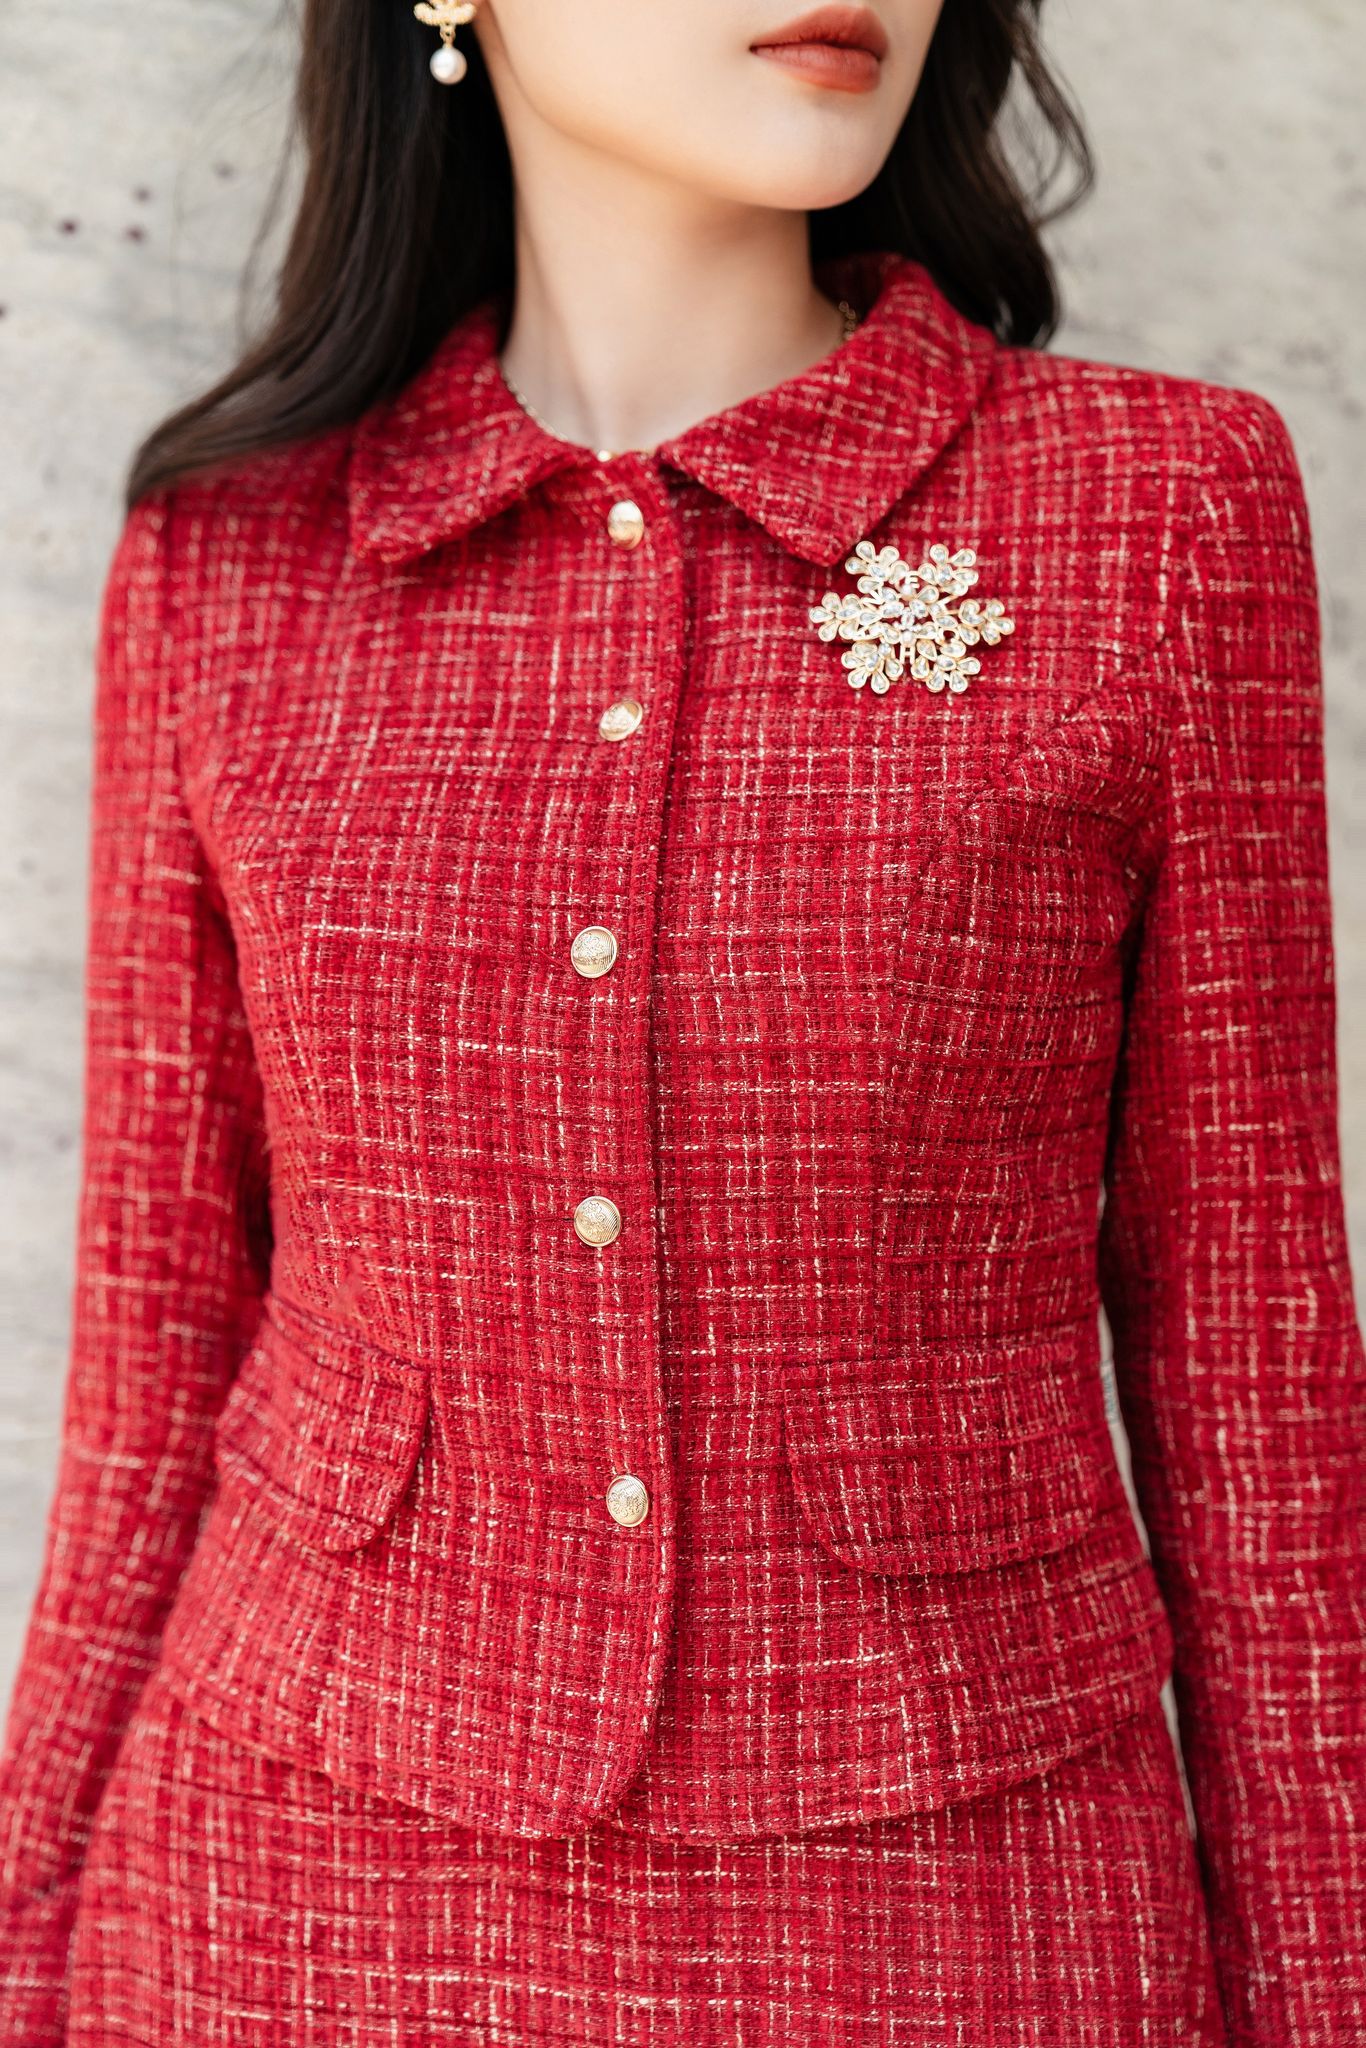 Sét đồ nữ áo khoác hồng viền ngọc kèm chân váy chữ A dạ tweed S2310   MixASale